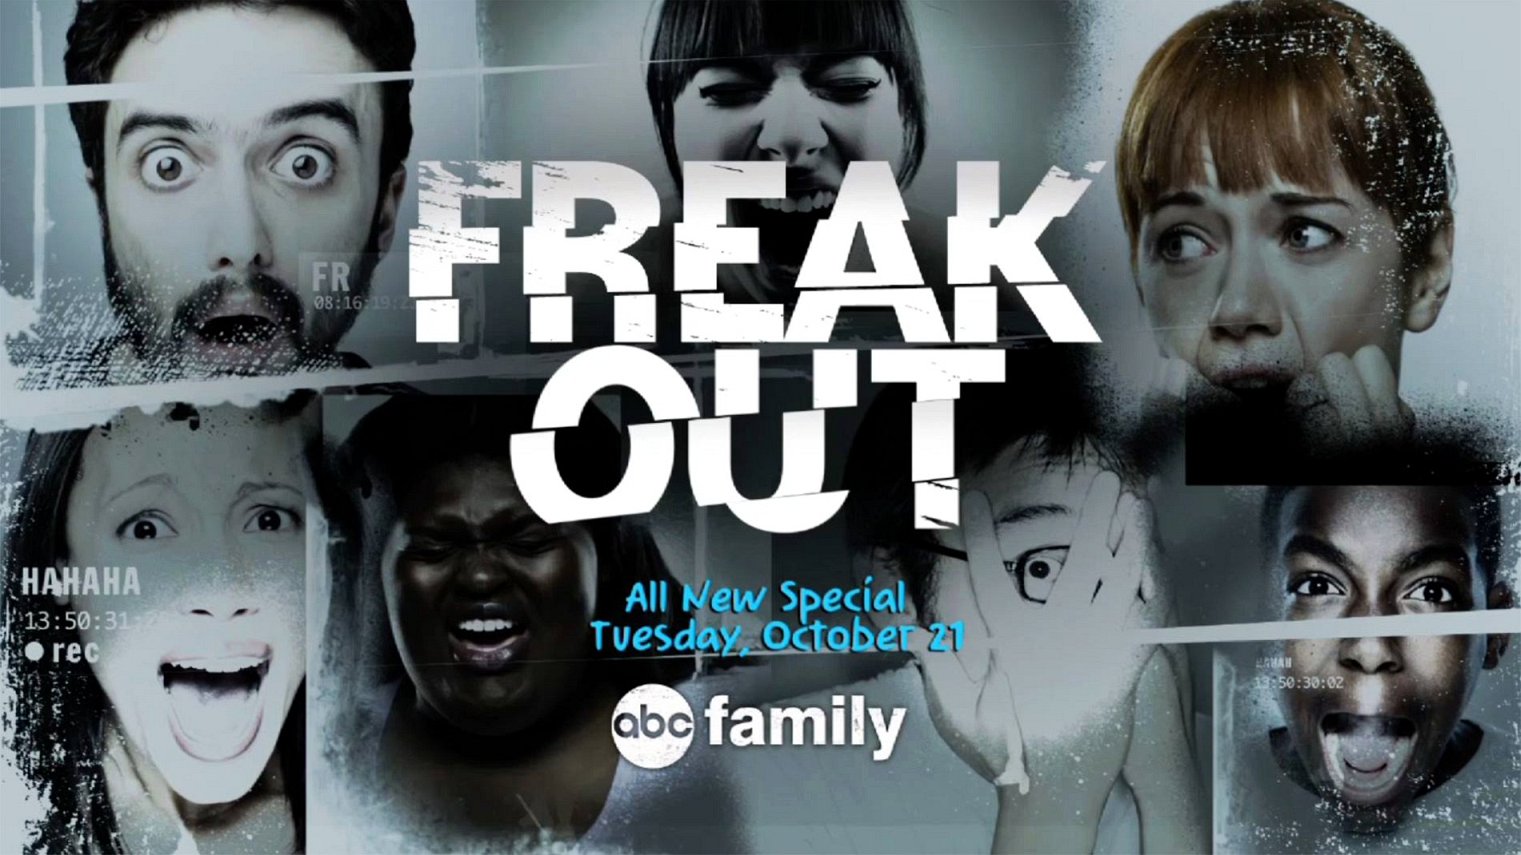 cast of Freak Out season 1